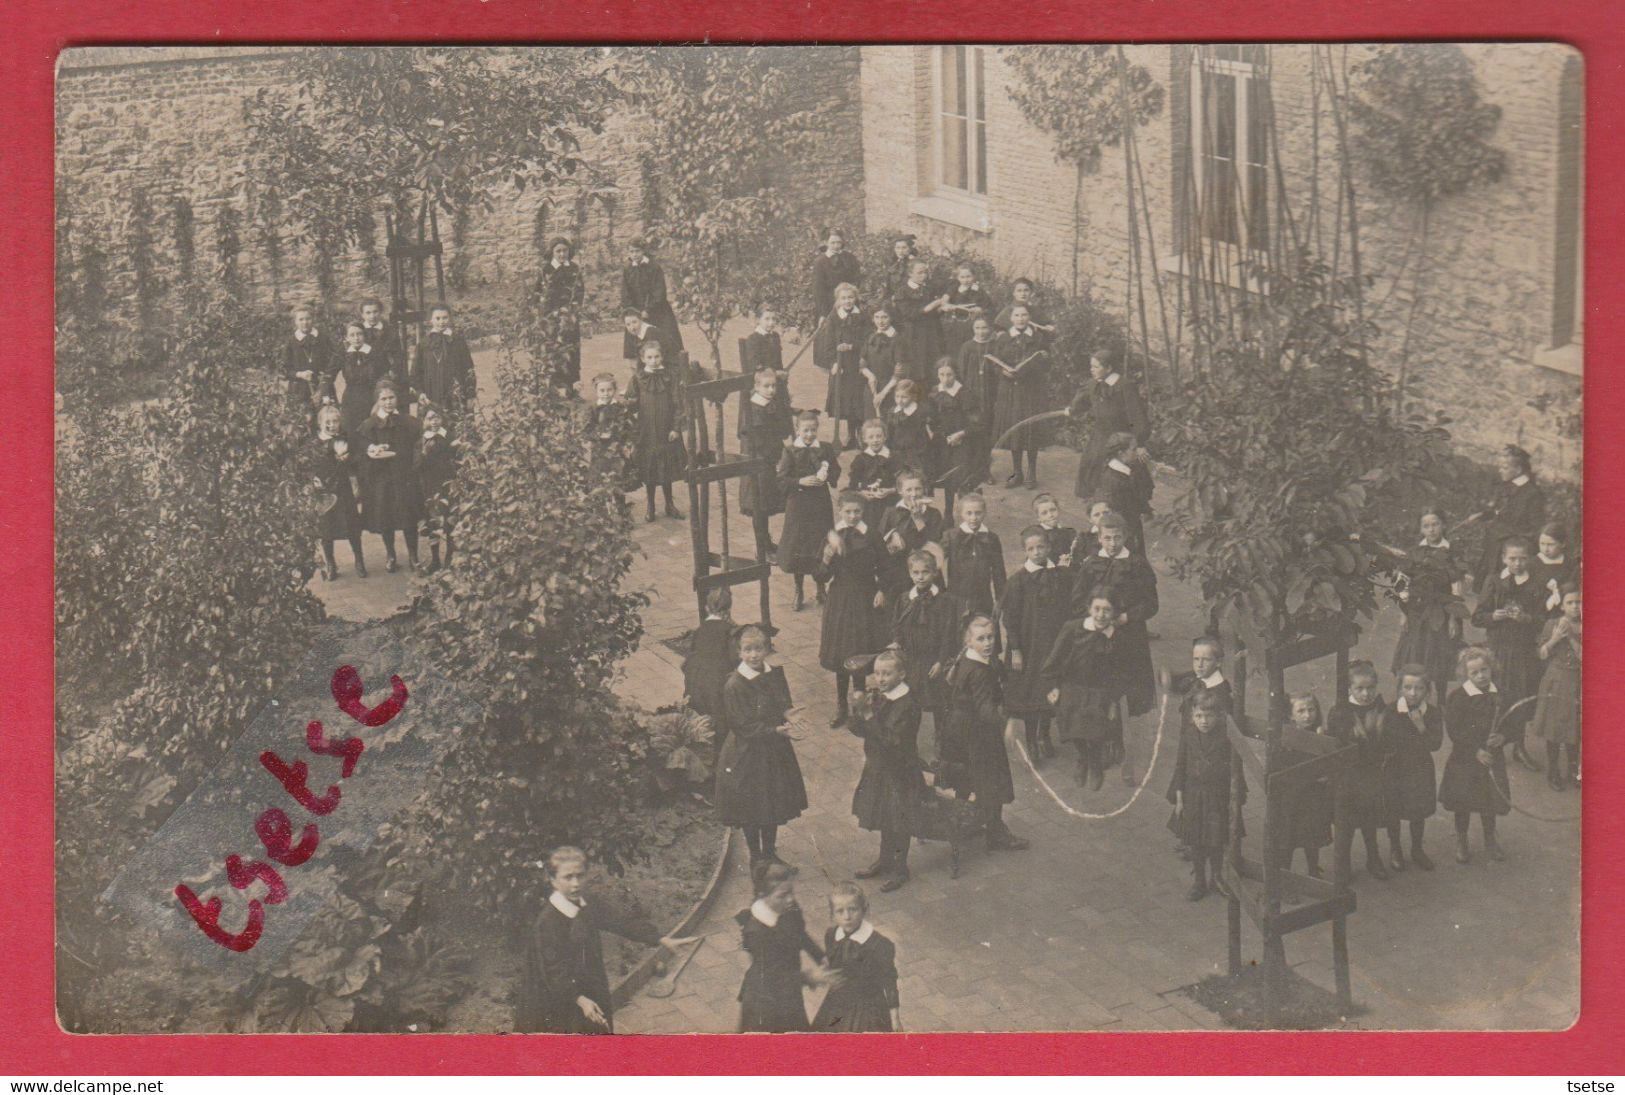 Fosses - Pensionnat De Jeunes Filles ... Courrier D'une éléve / Carte Photo -1912 ( Voir Verso ) - Fosses-la-Ville